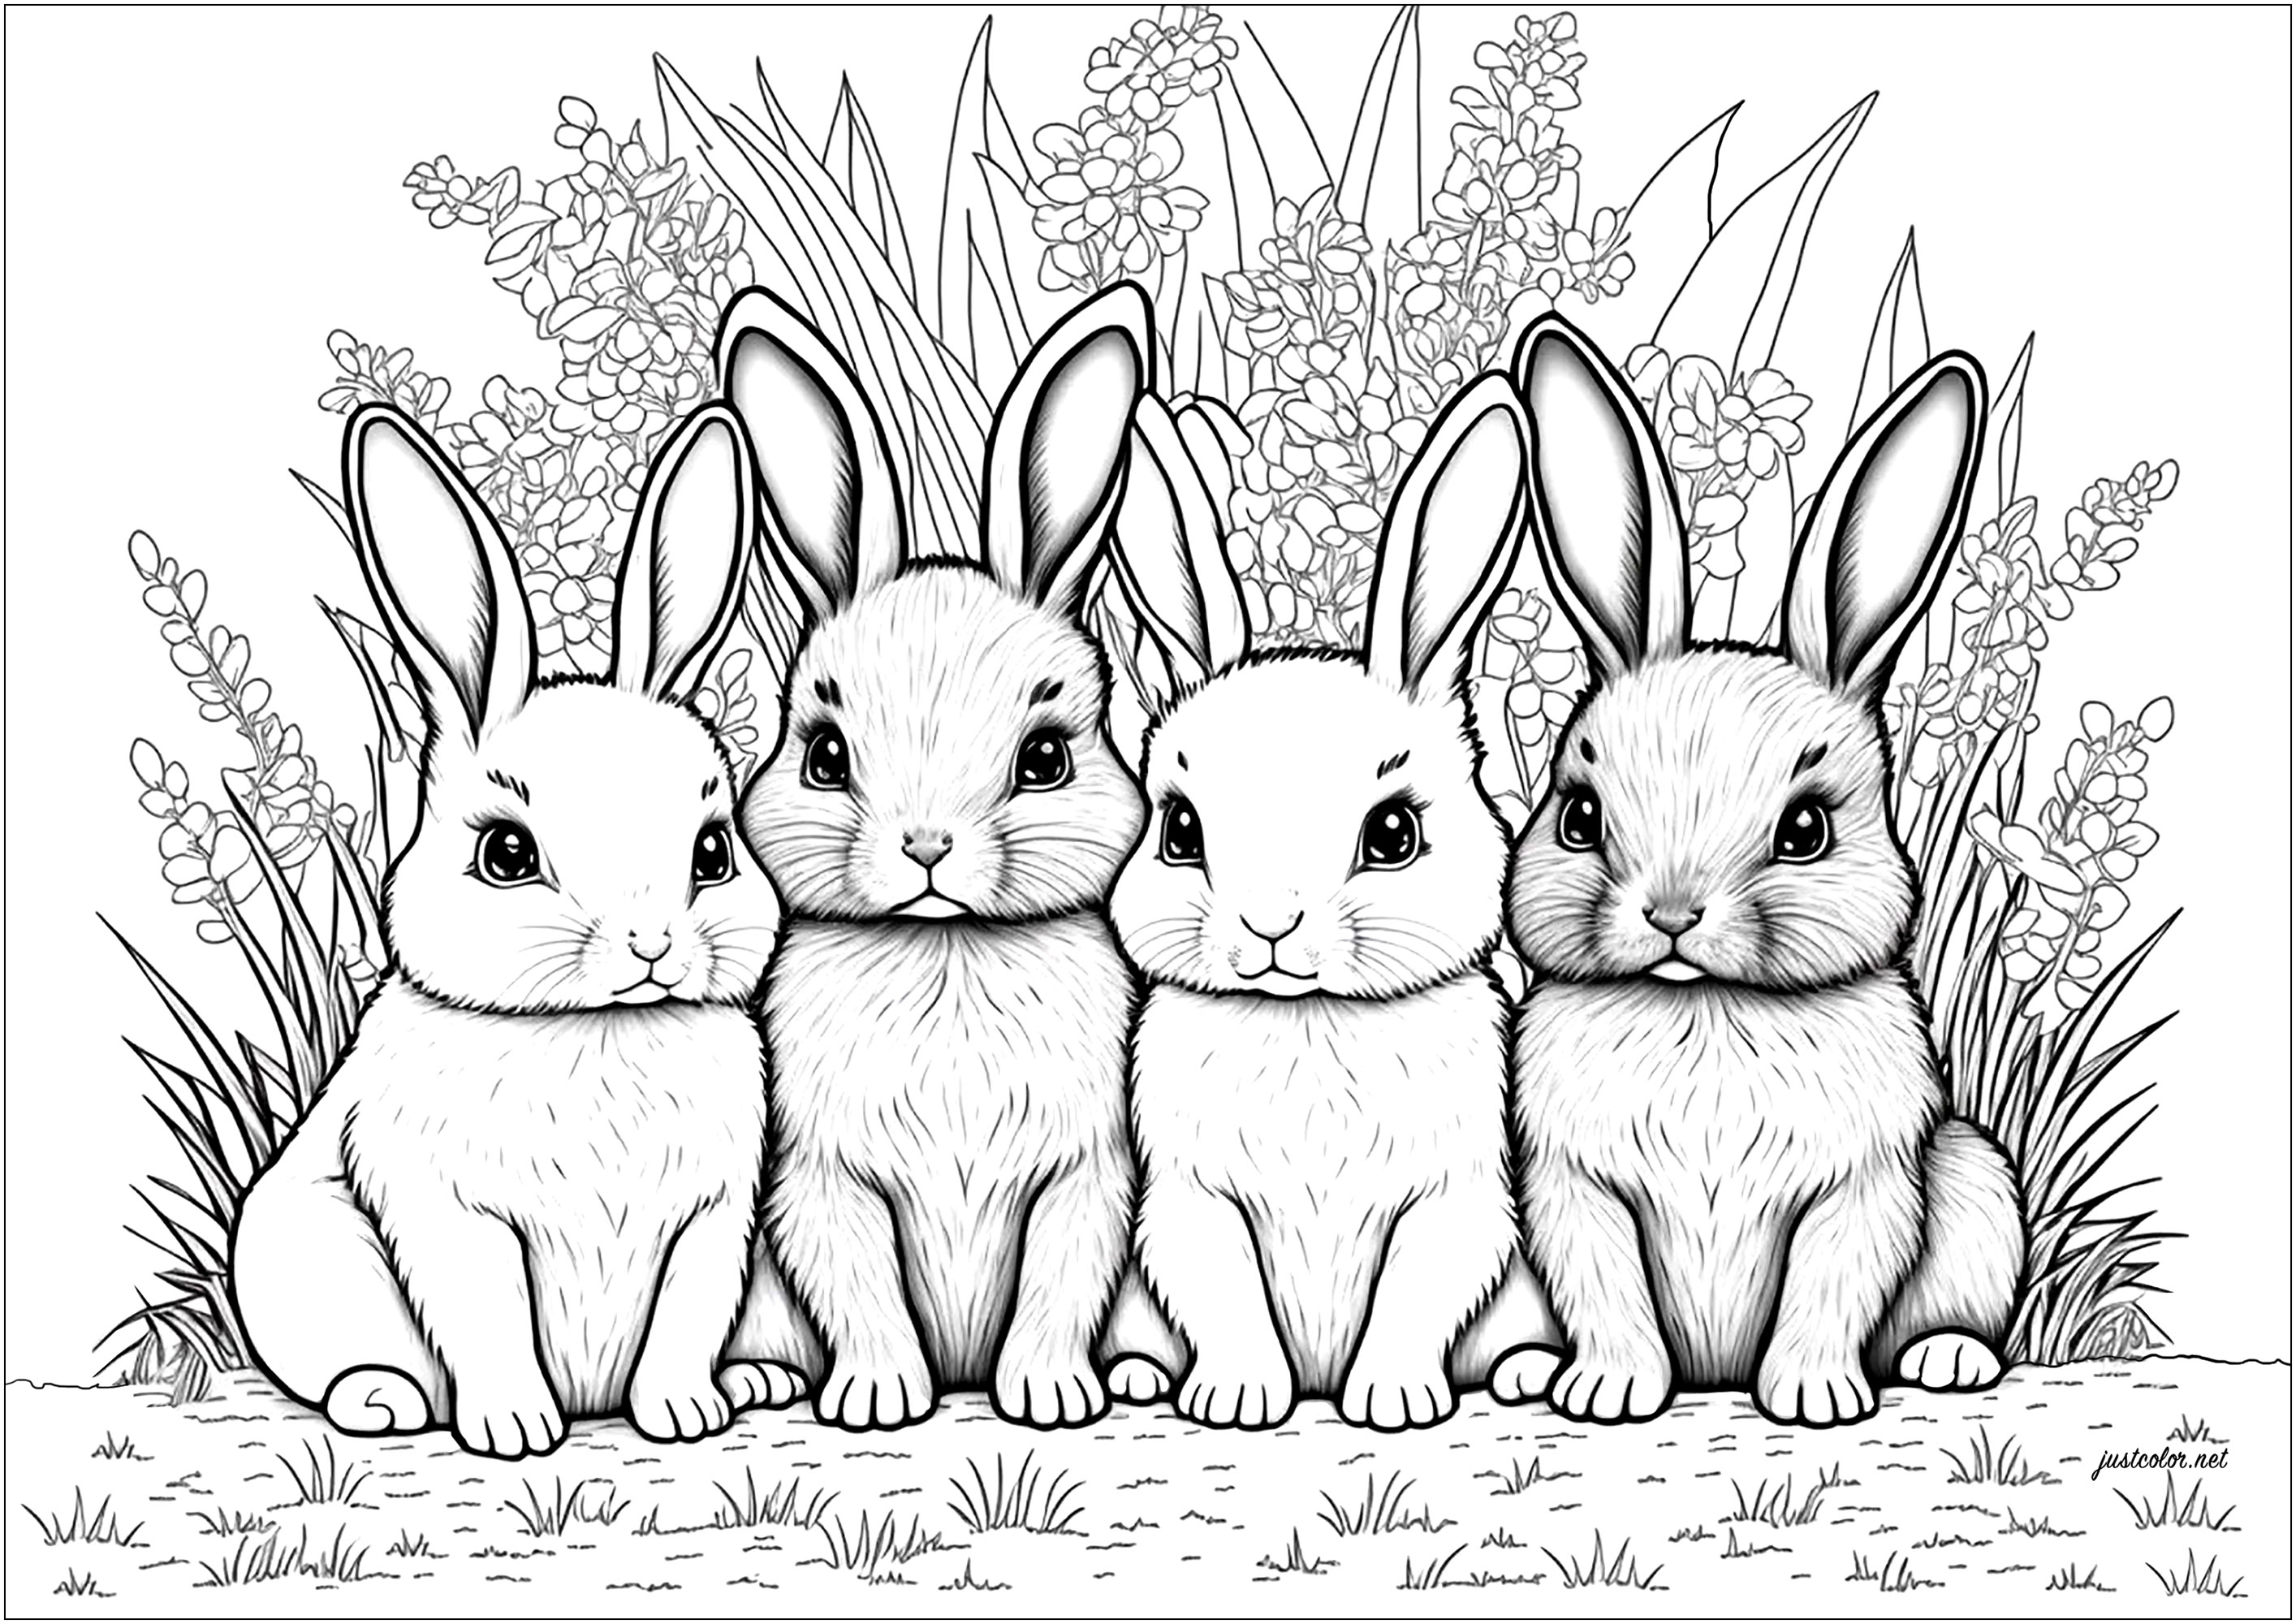 Vier niedliche kleine Kaninchen zum Ausmalen, mit grünem Hintergrund. Diese Malvorlage ist so niedlich wie ein Knopf! Vier kleine Kaninchen, eines niedlicher als das andere, warten auf dich, bereit, ausgemalt zu werden. Sie sitzen alle auf ihren Hinterbeinen, mit langen Ohren und großen Augen, und sind von einem grünen Hintergrund umgeben.